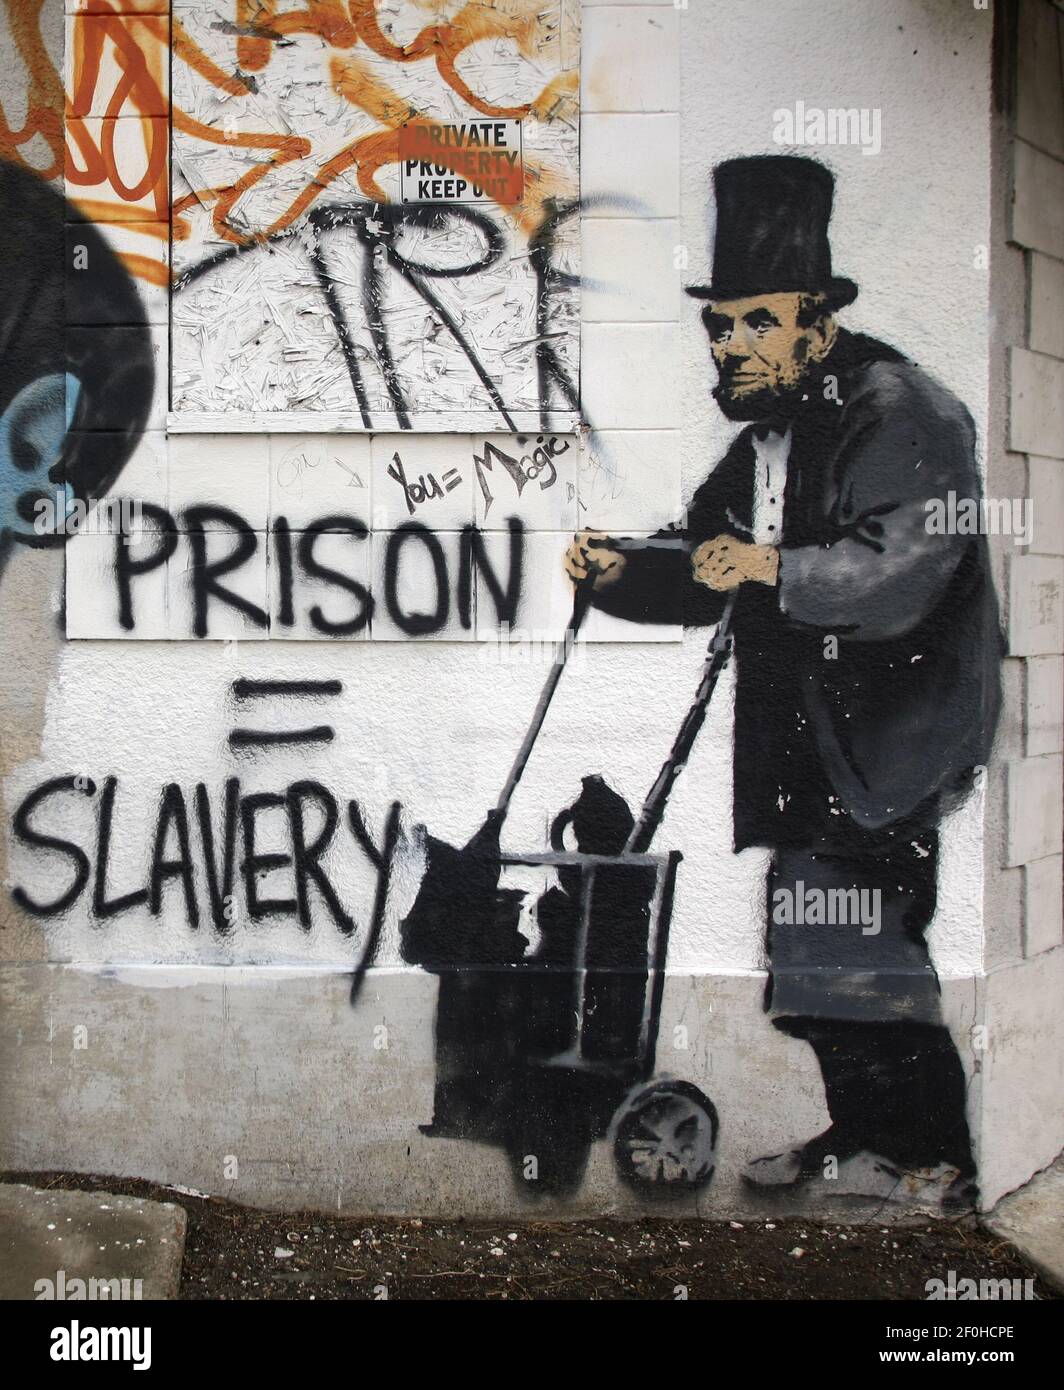 31 mai 2010 - Nouvelle-Orléans, Louisiane - Banksy Street graffiti de Lincoln comme un vagabond sans-abri dans le centre-ville de la Nouvelle-Orléans. Le bâtiment a depuis été démoli. Il est impossible de savoir si une partie de la plaque a été enregistrée. Banksy a visité la Nouvelle-Orléans en 2008. (Photo de Charlie Varley/Sipa USA) Banque D'Images